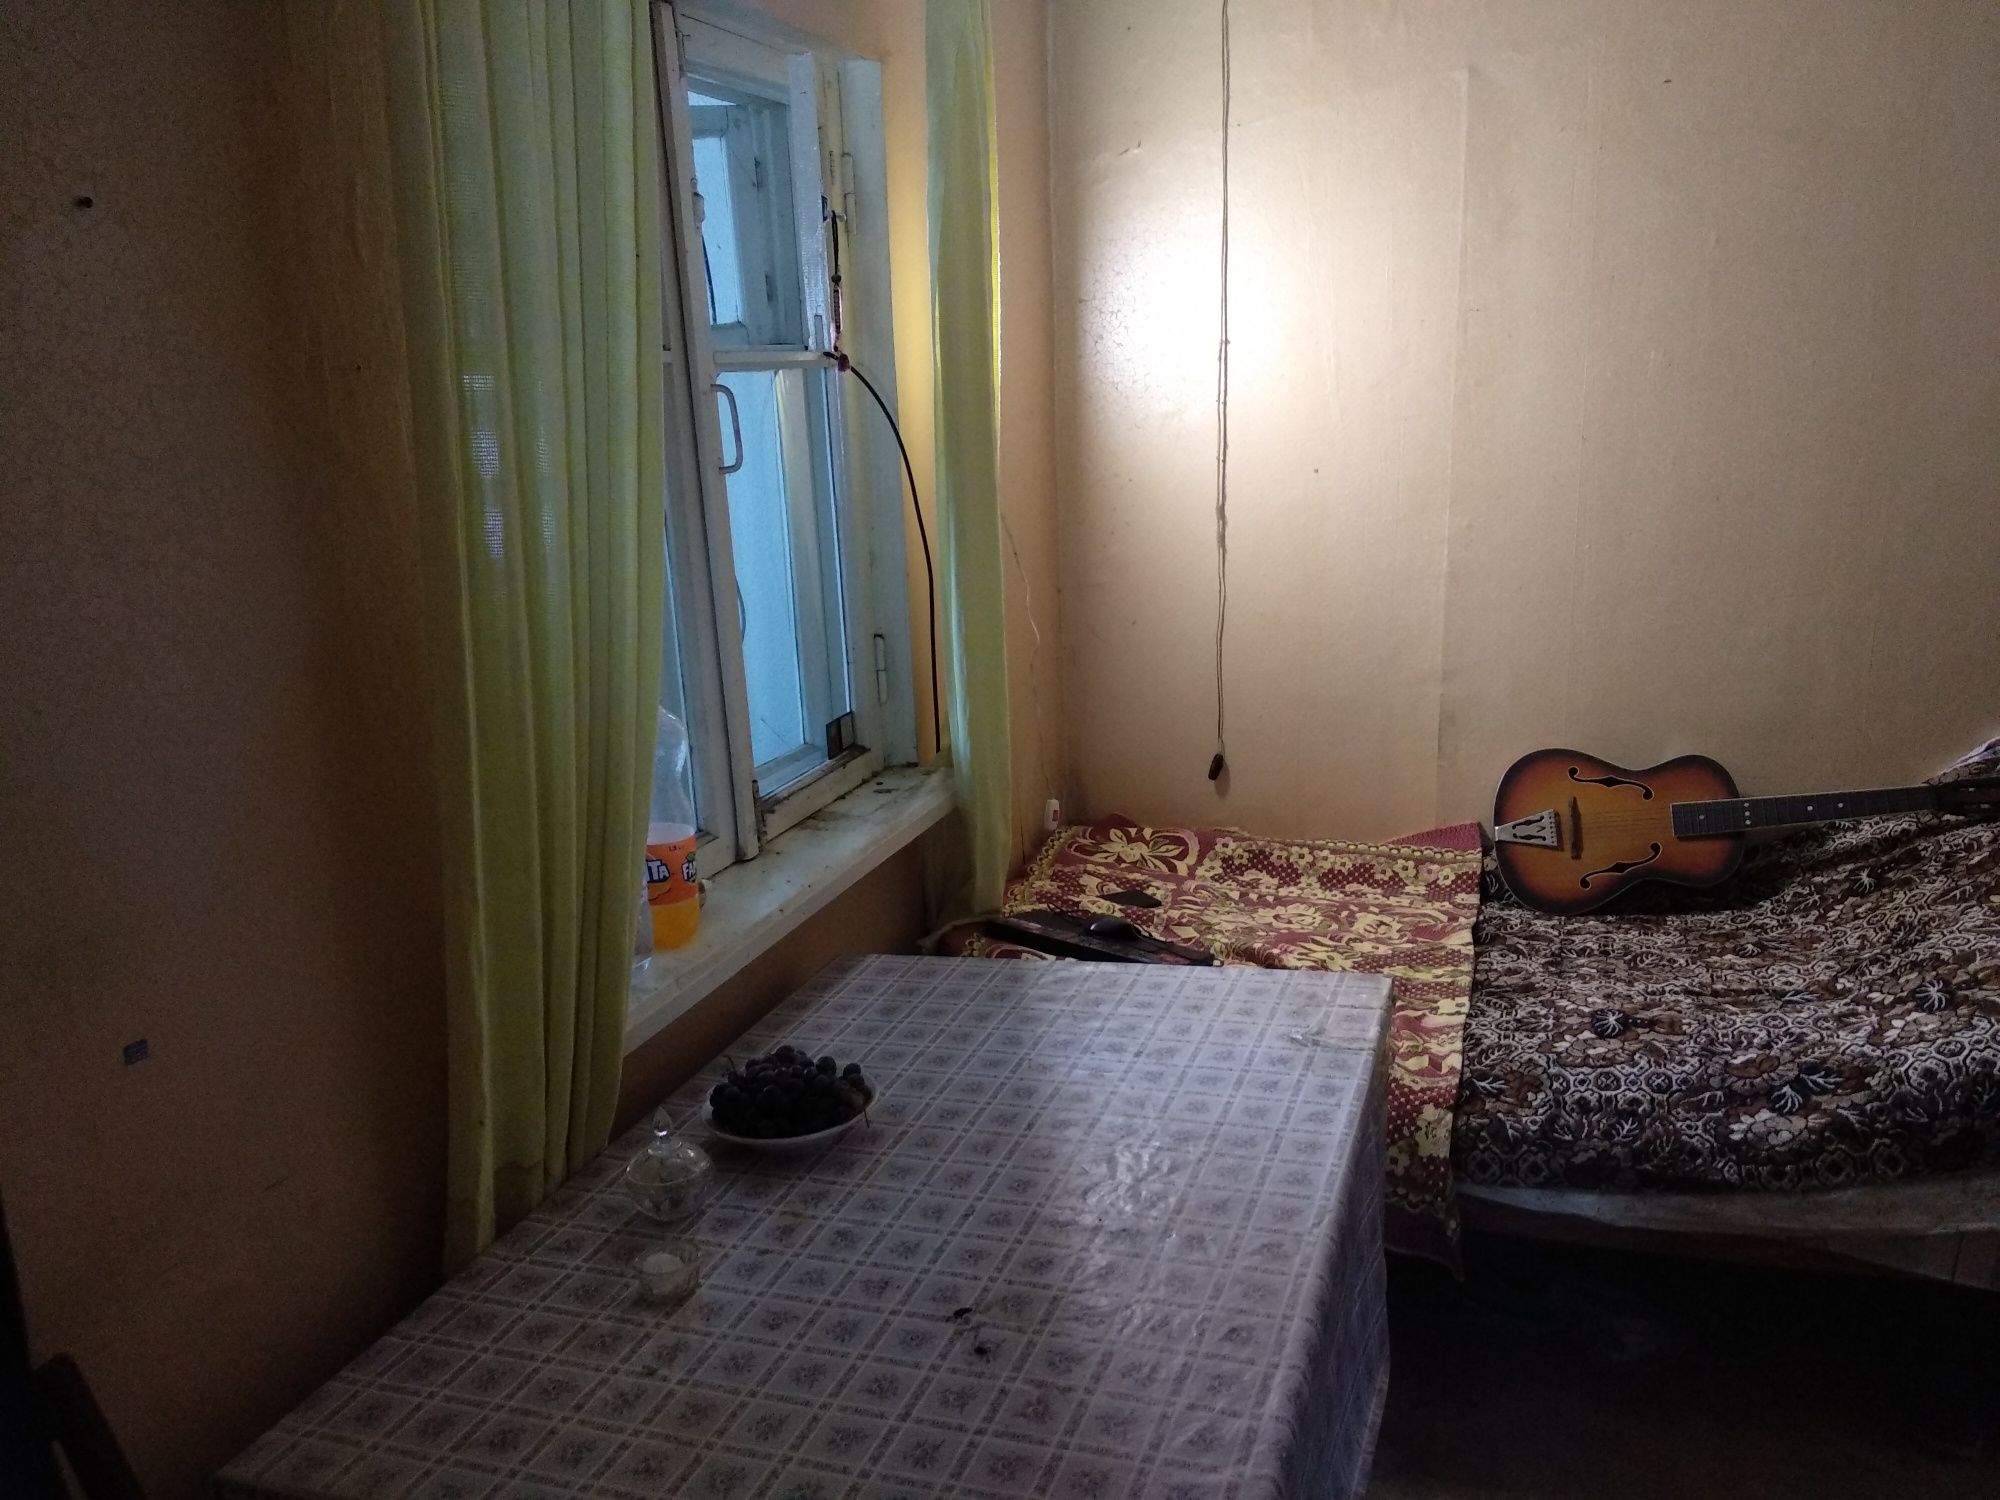 Меняю или продаю квартиру в Молдове Новые Анены